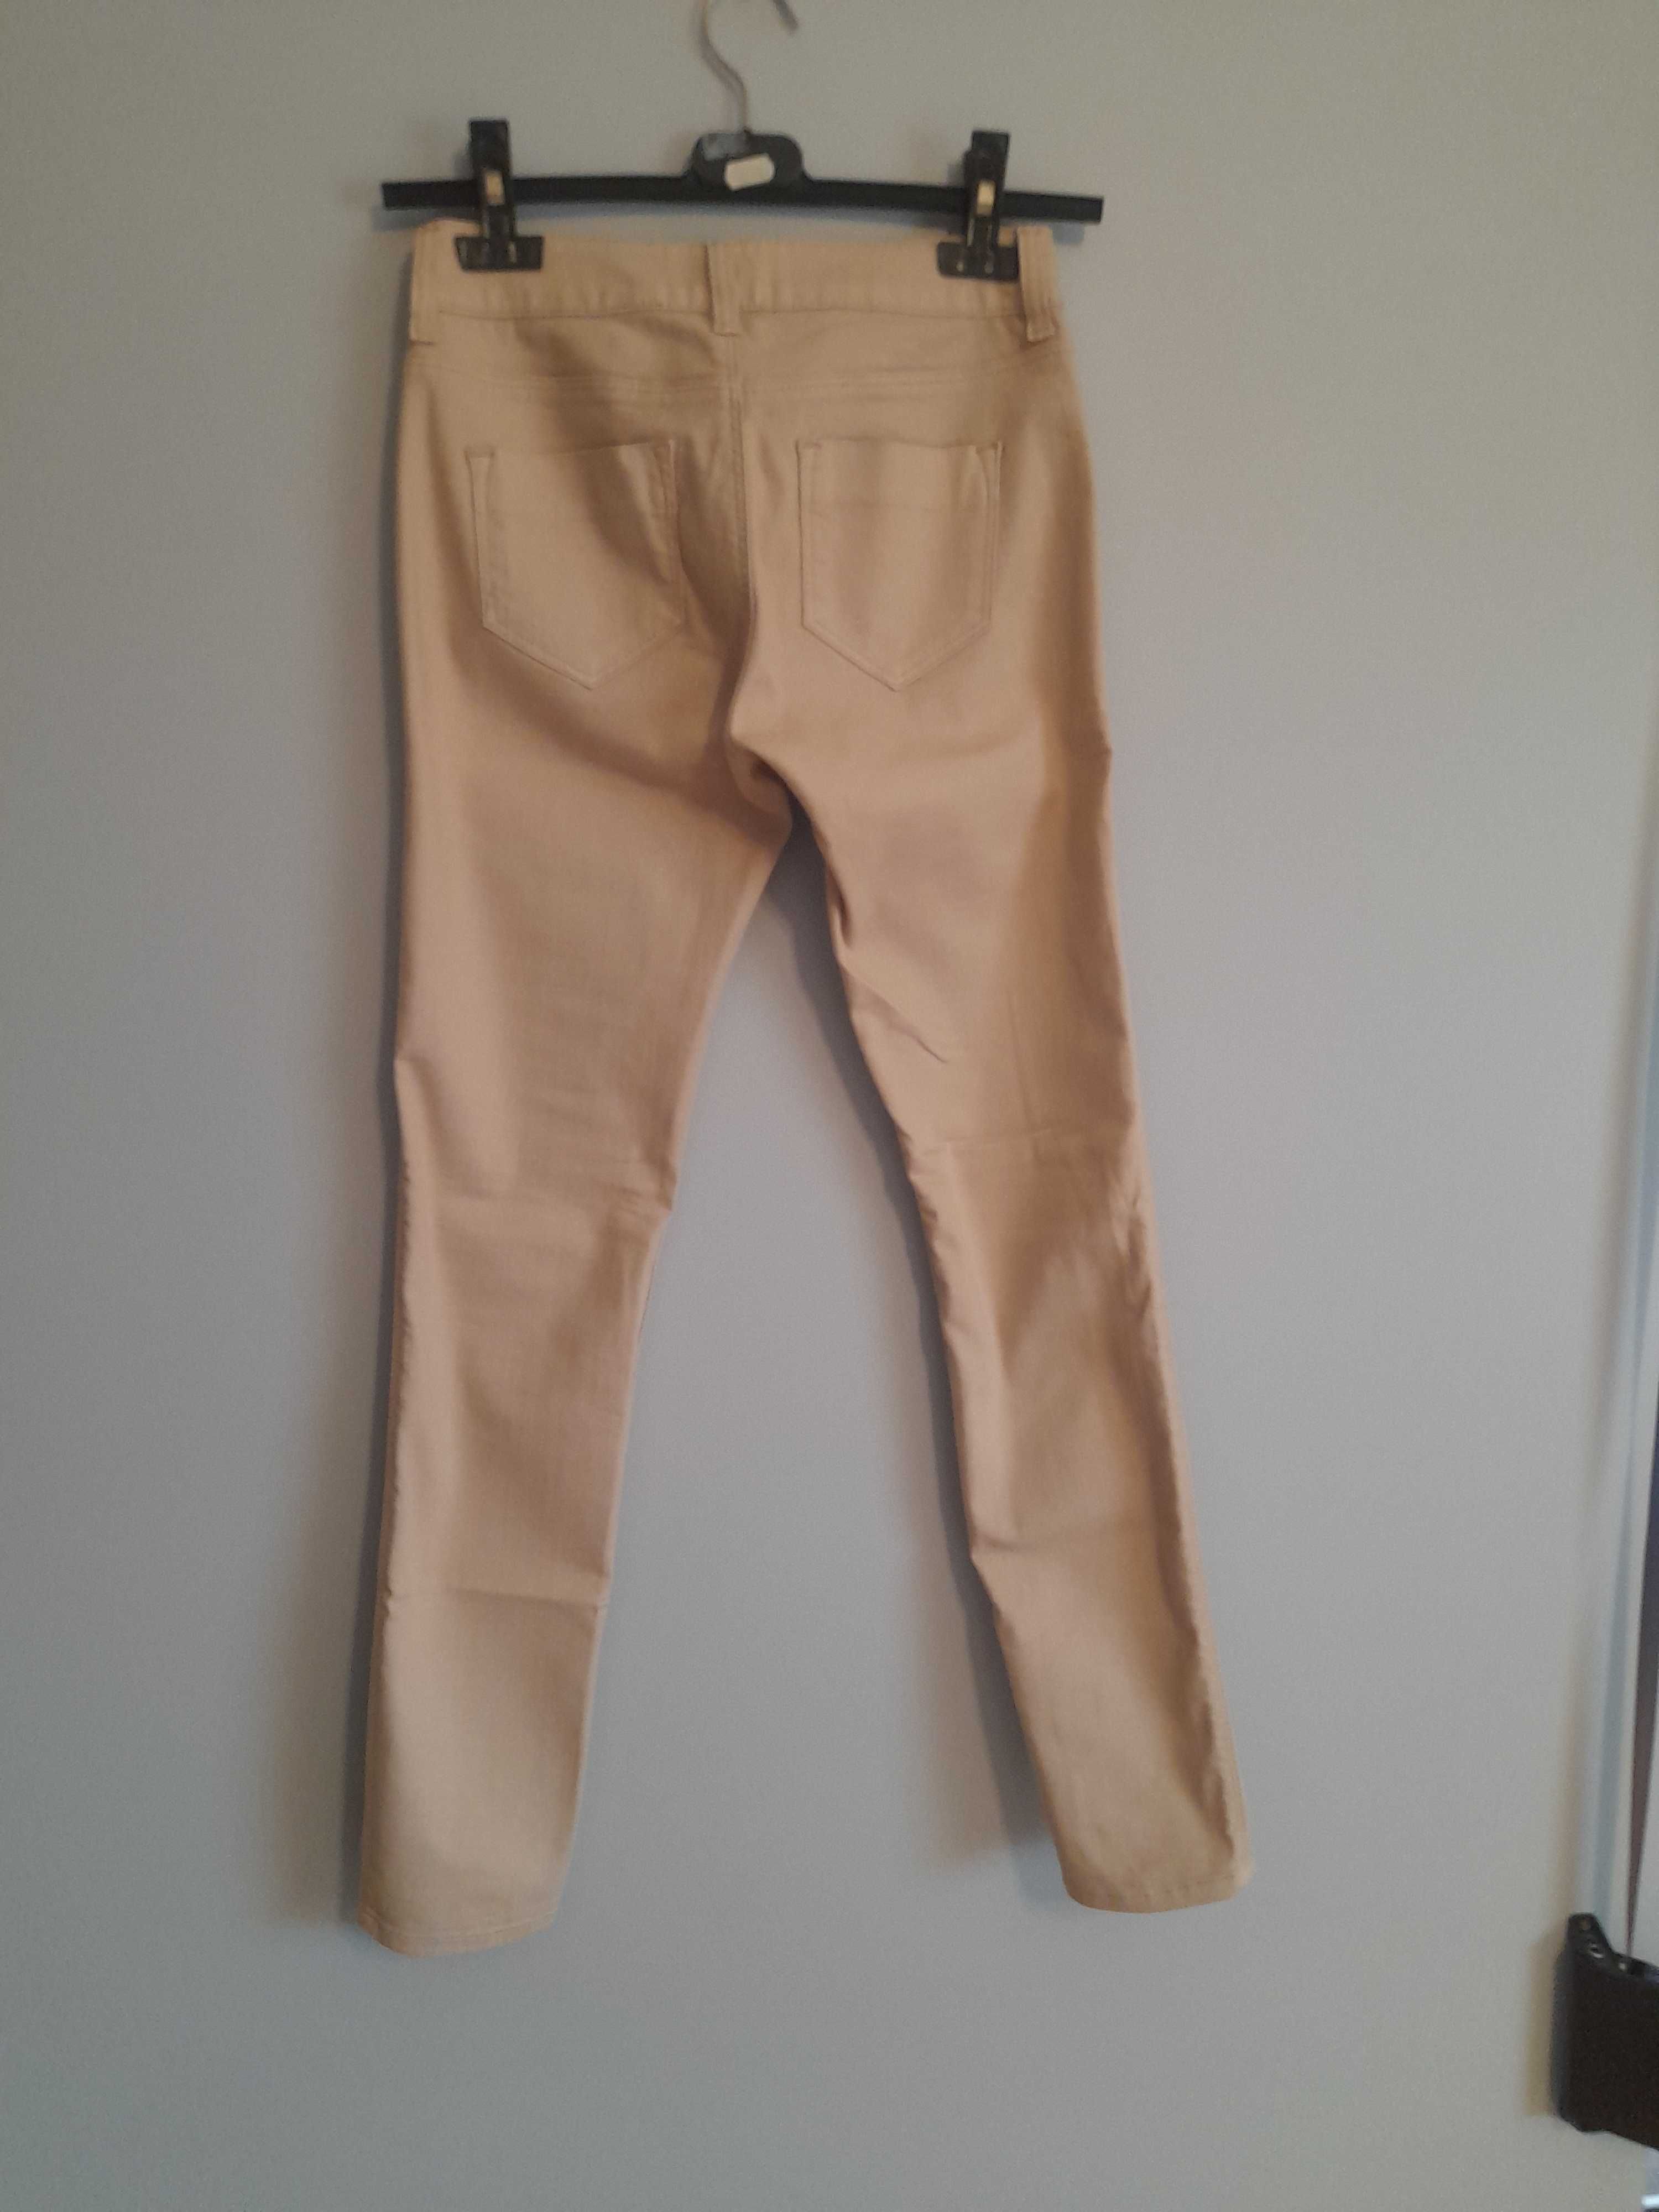 Letnie spodnie typu jeans firmy Cross r. 36